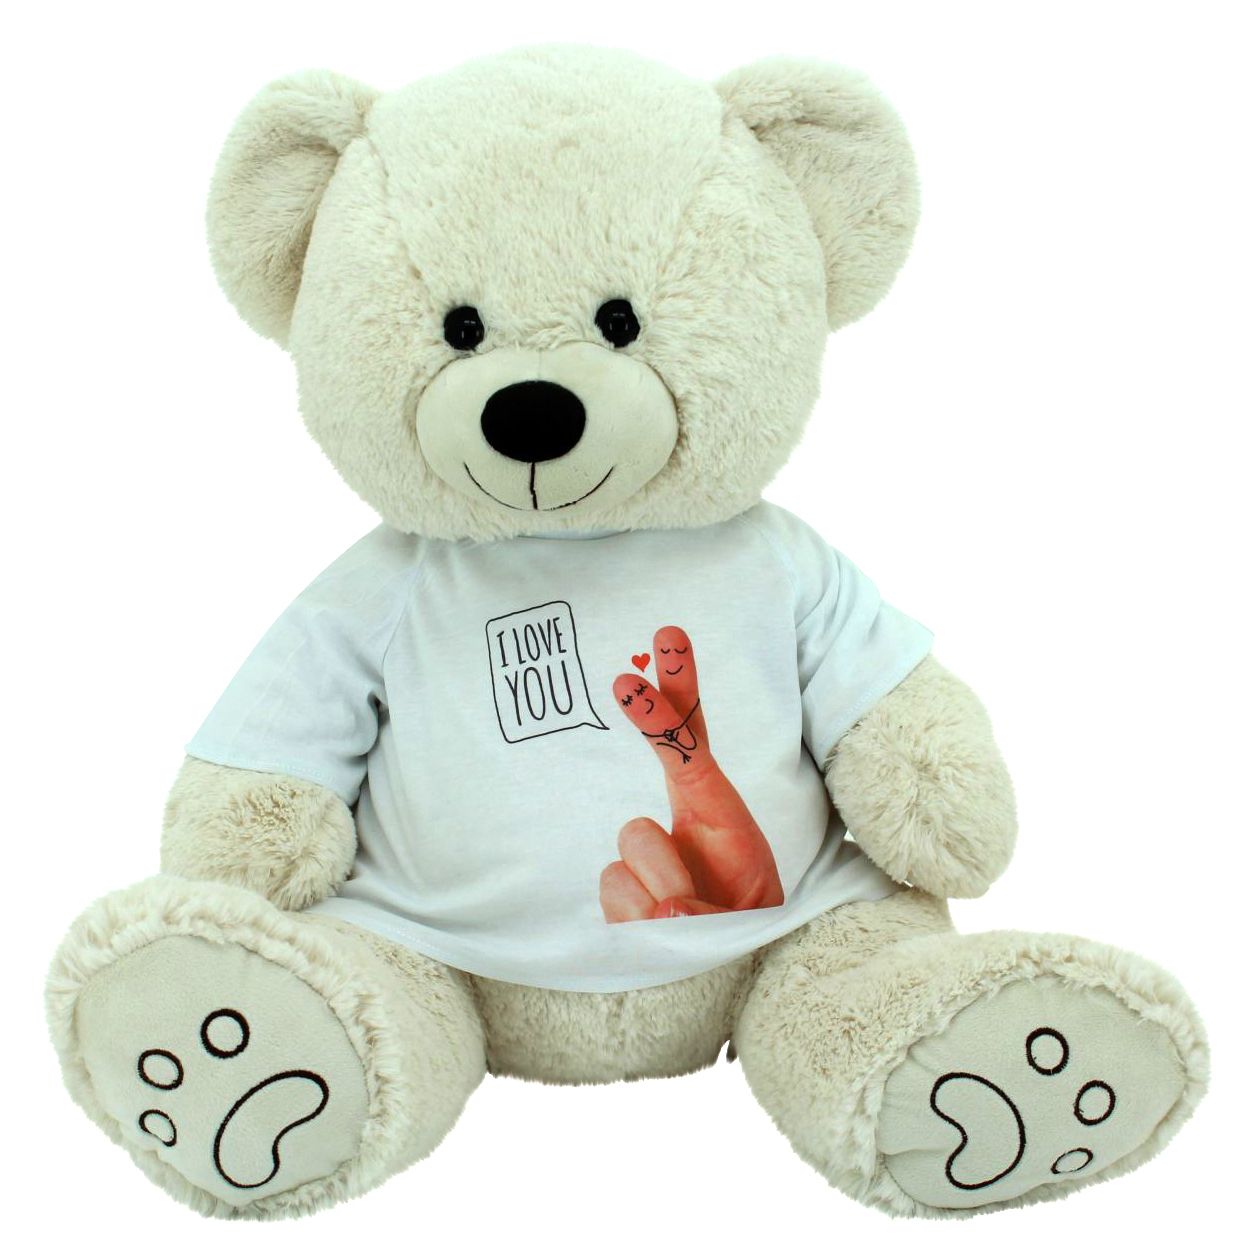 sweety toys 6342 valentine teddy "ich liebe dich" "i love you" bär plüschbär beige-creme 70 cm